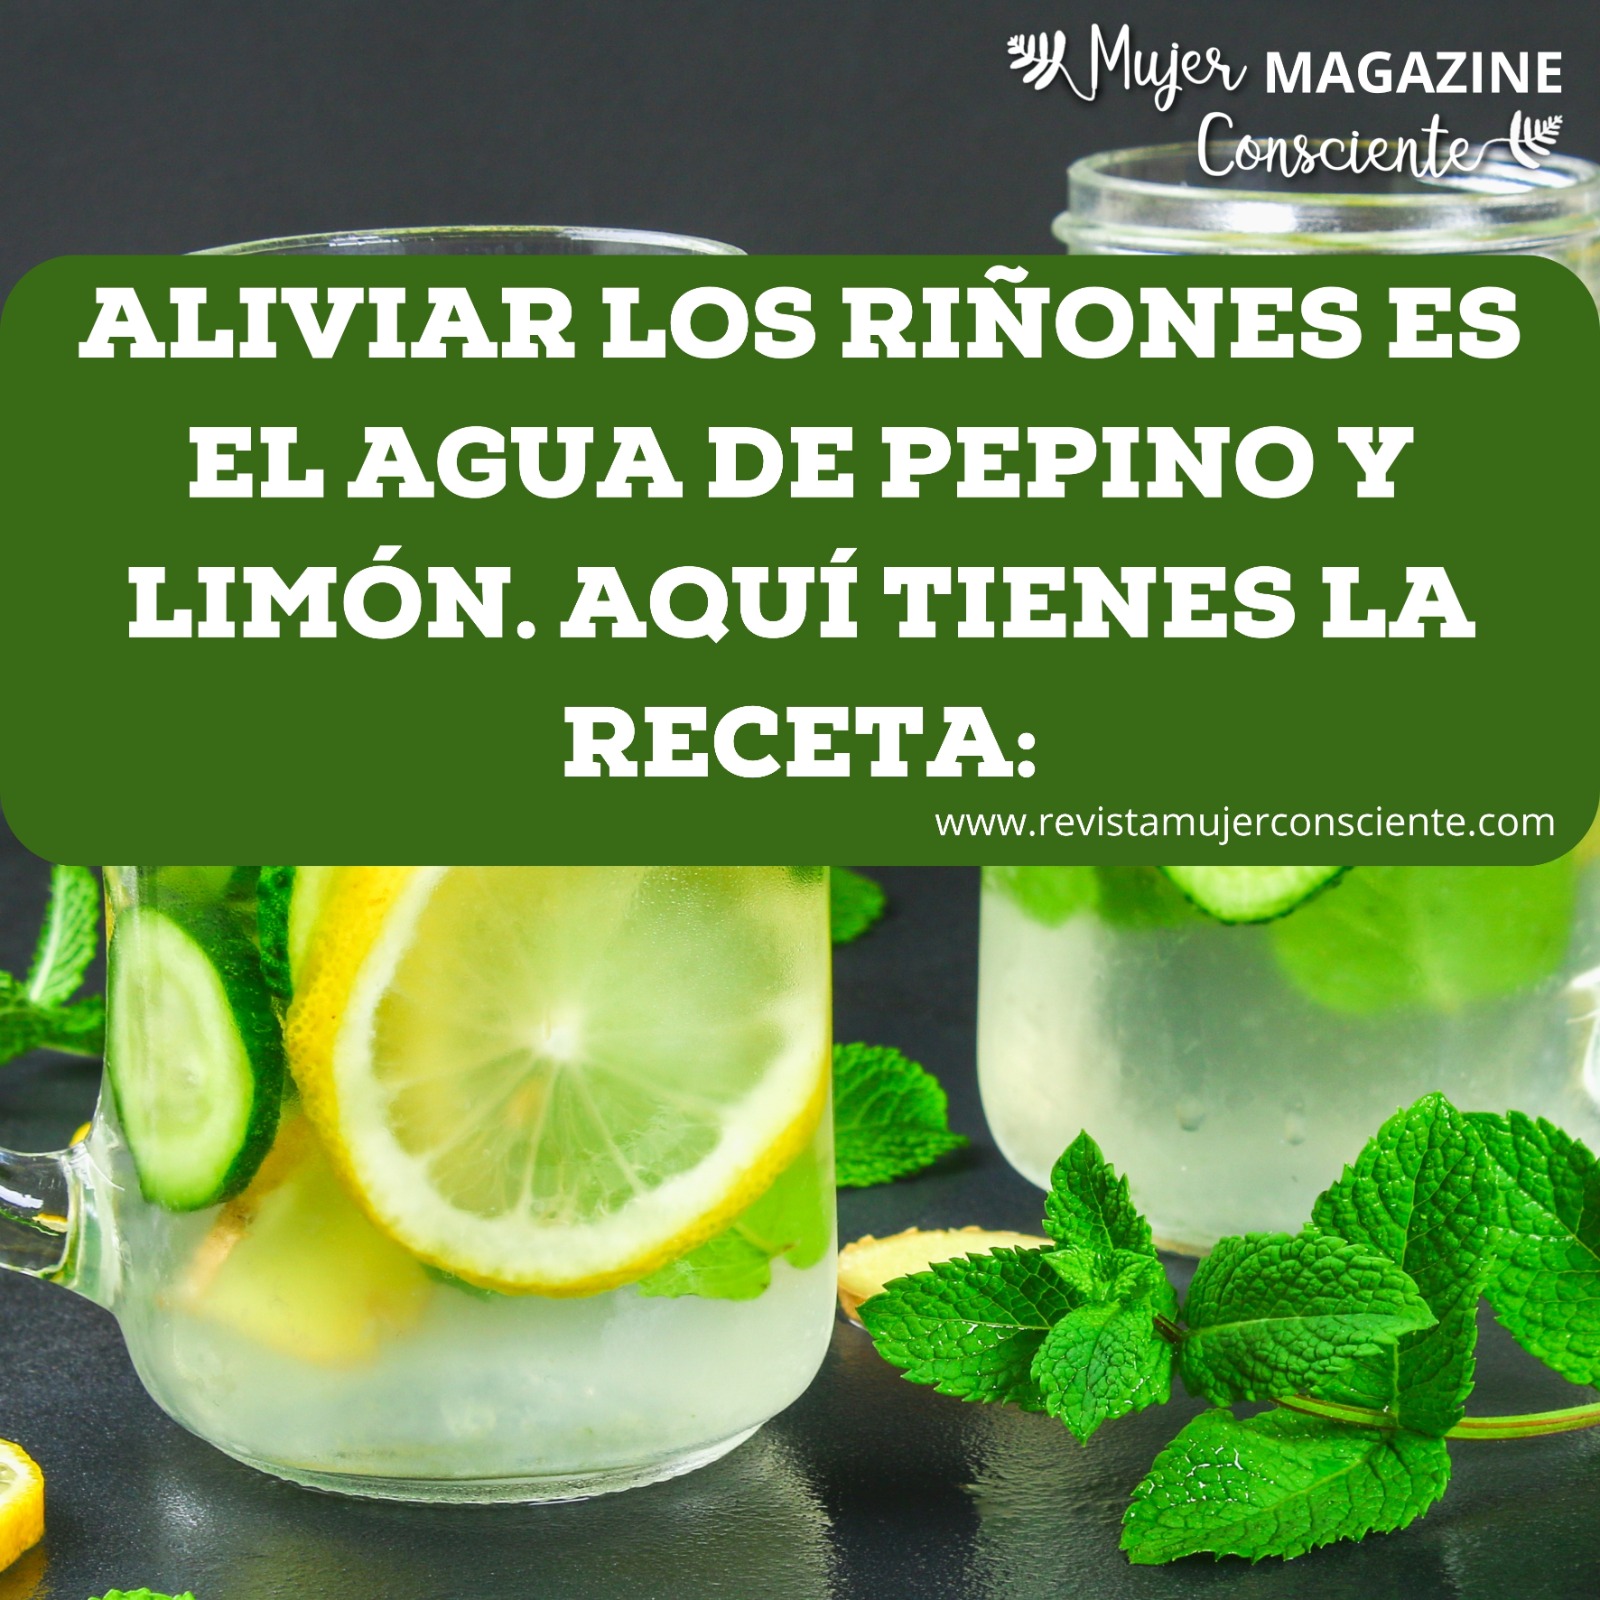 Aliviar los riñones es el agua de pepino y limón. Aquí tienes la receta: